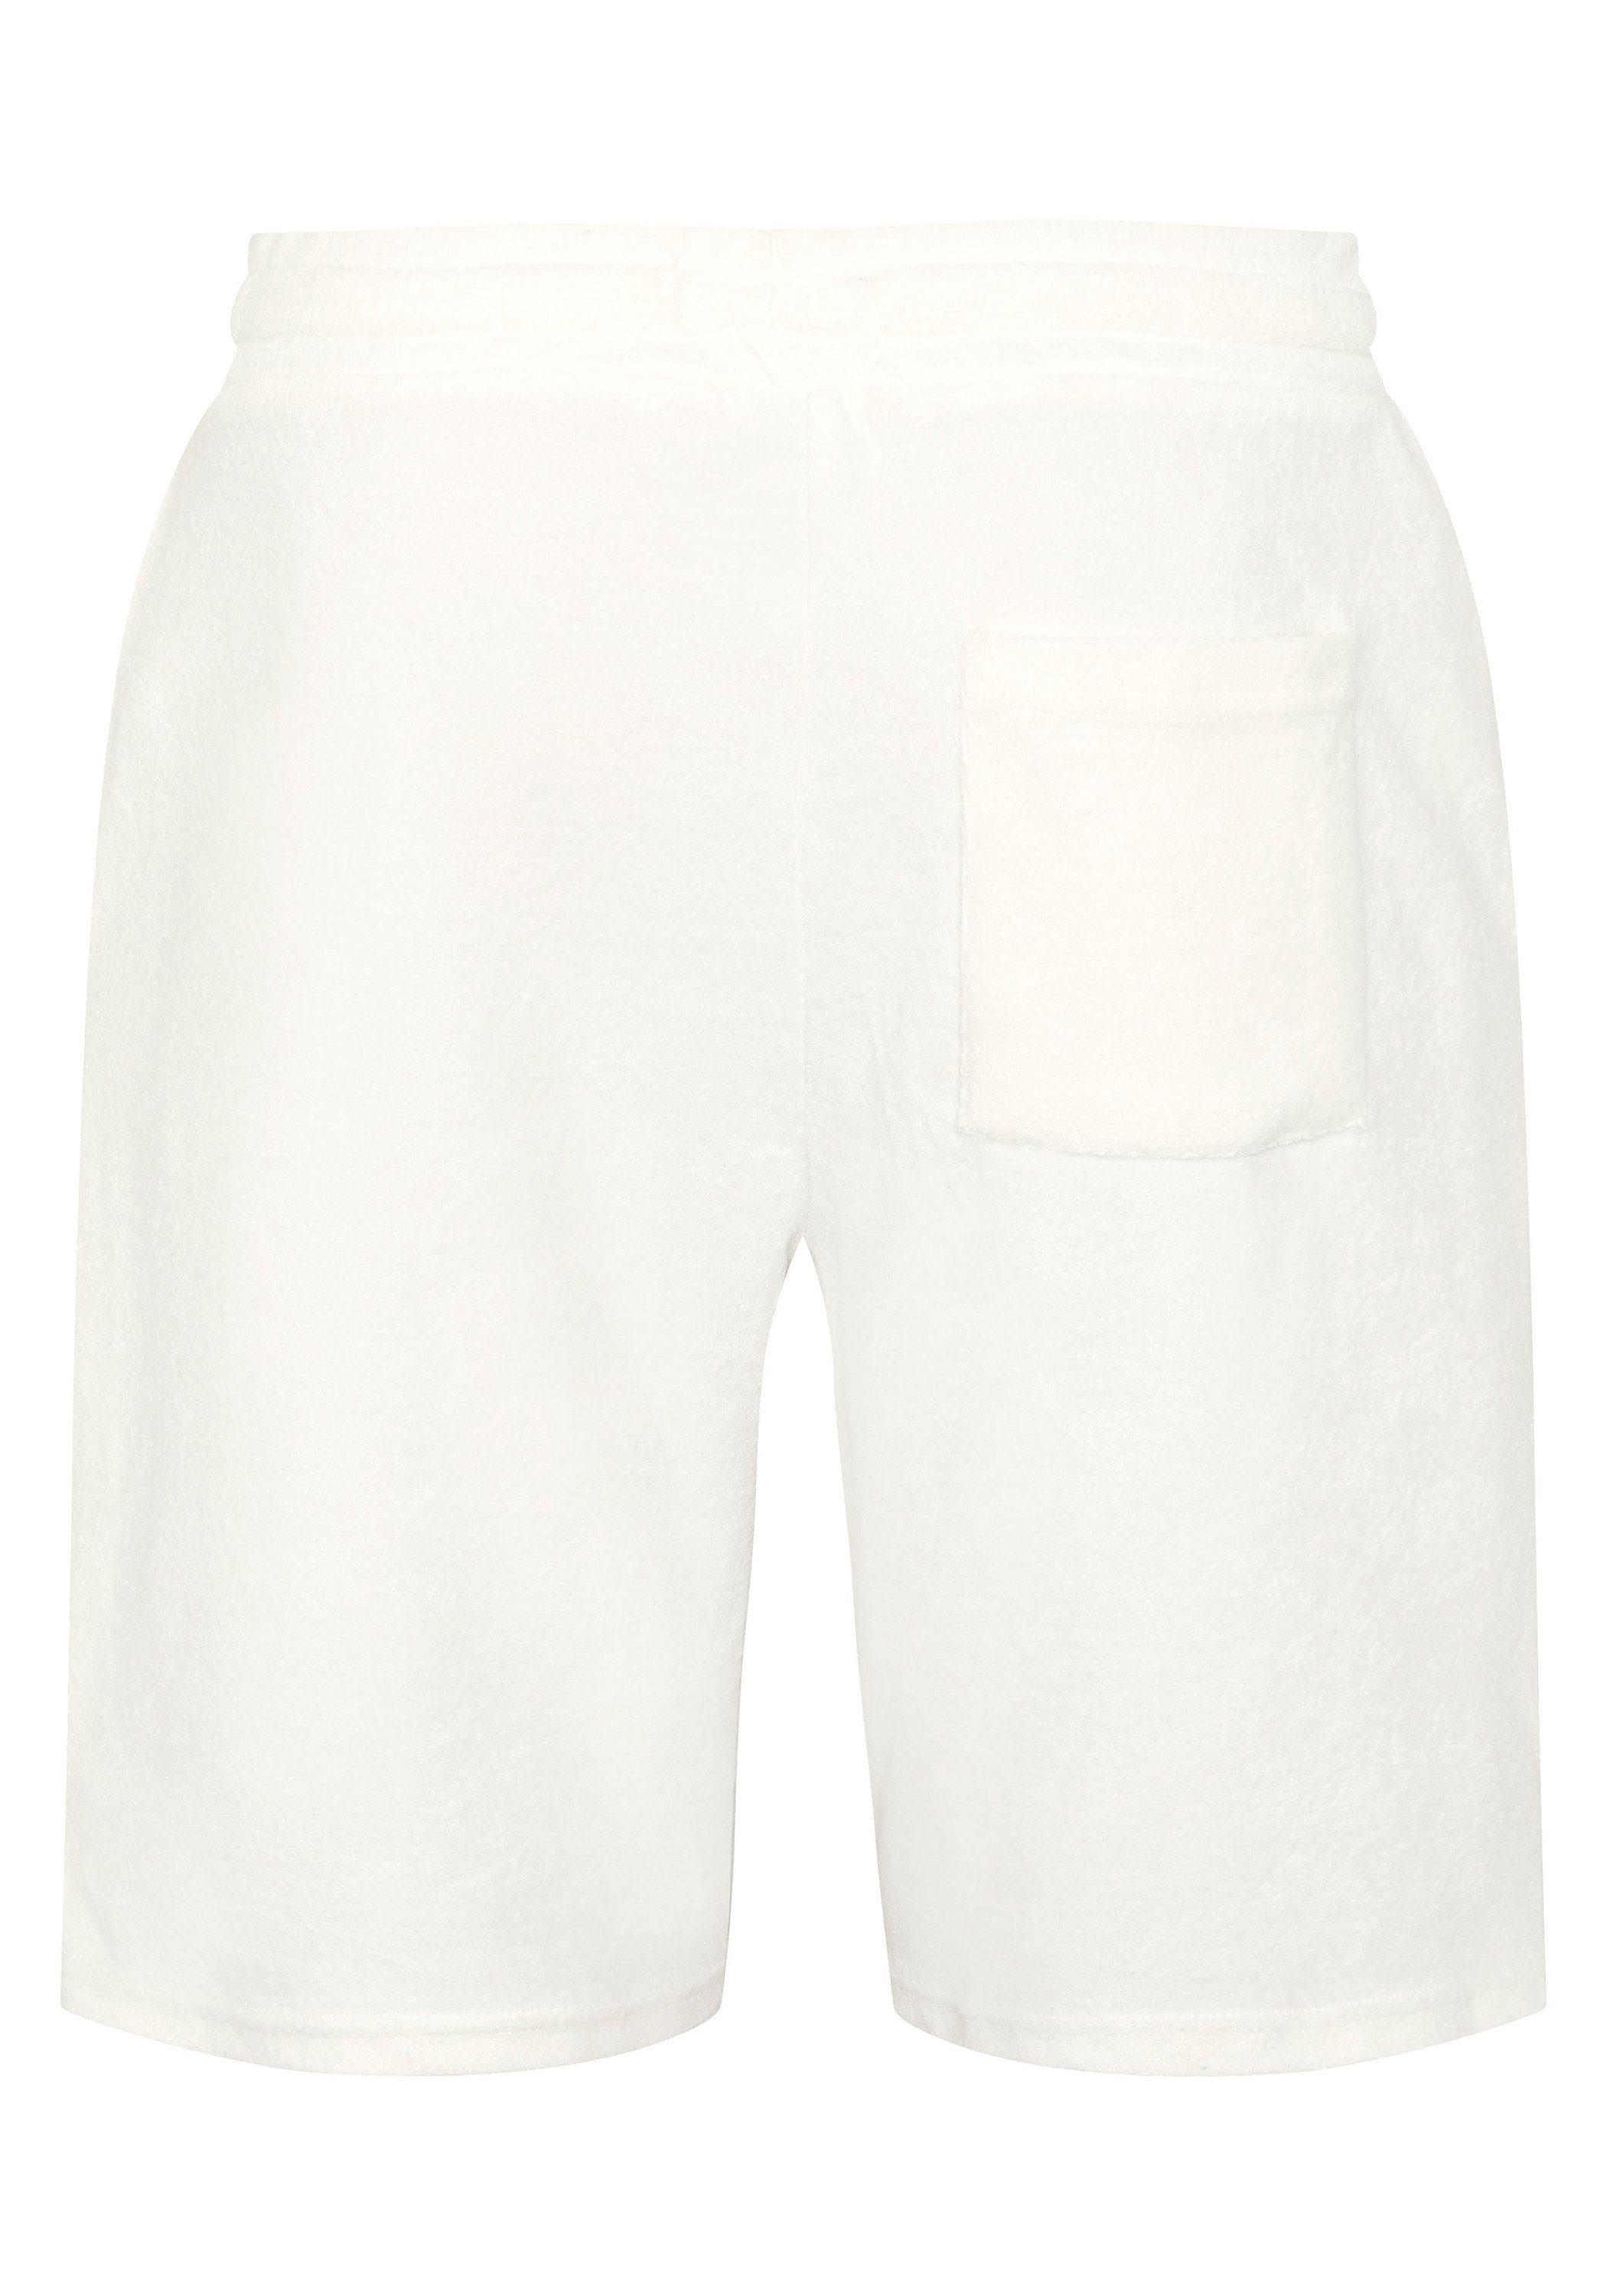 1 aus Sweatshorts Baumwollmix White Star Chiemsee Shorts 11-4202